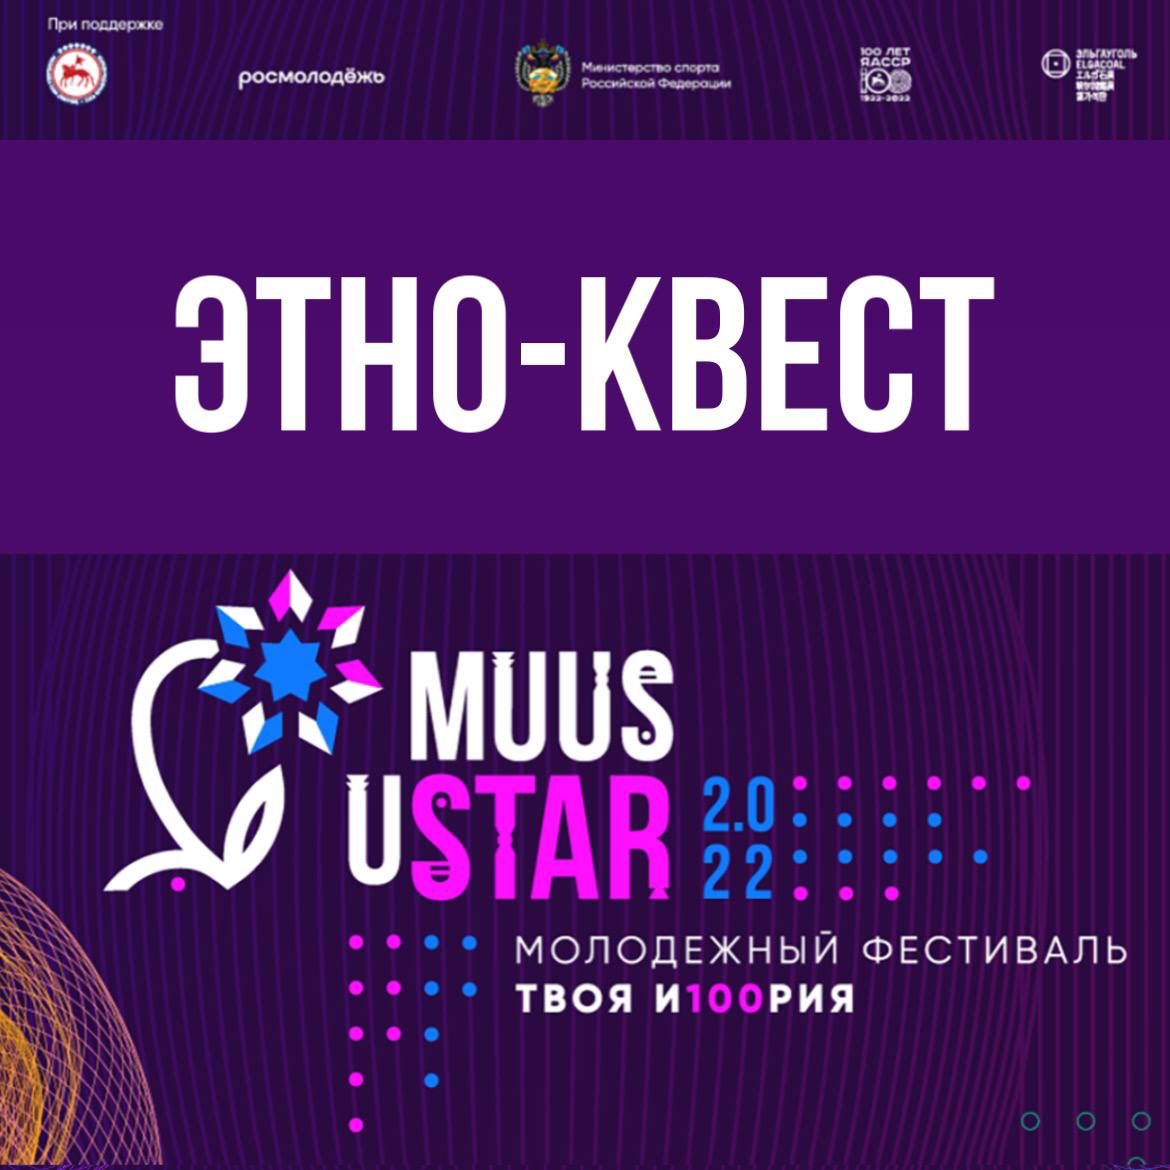 Этно-квест пройдет в Якутске 25 марта